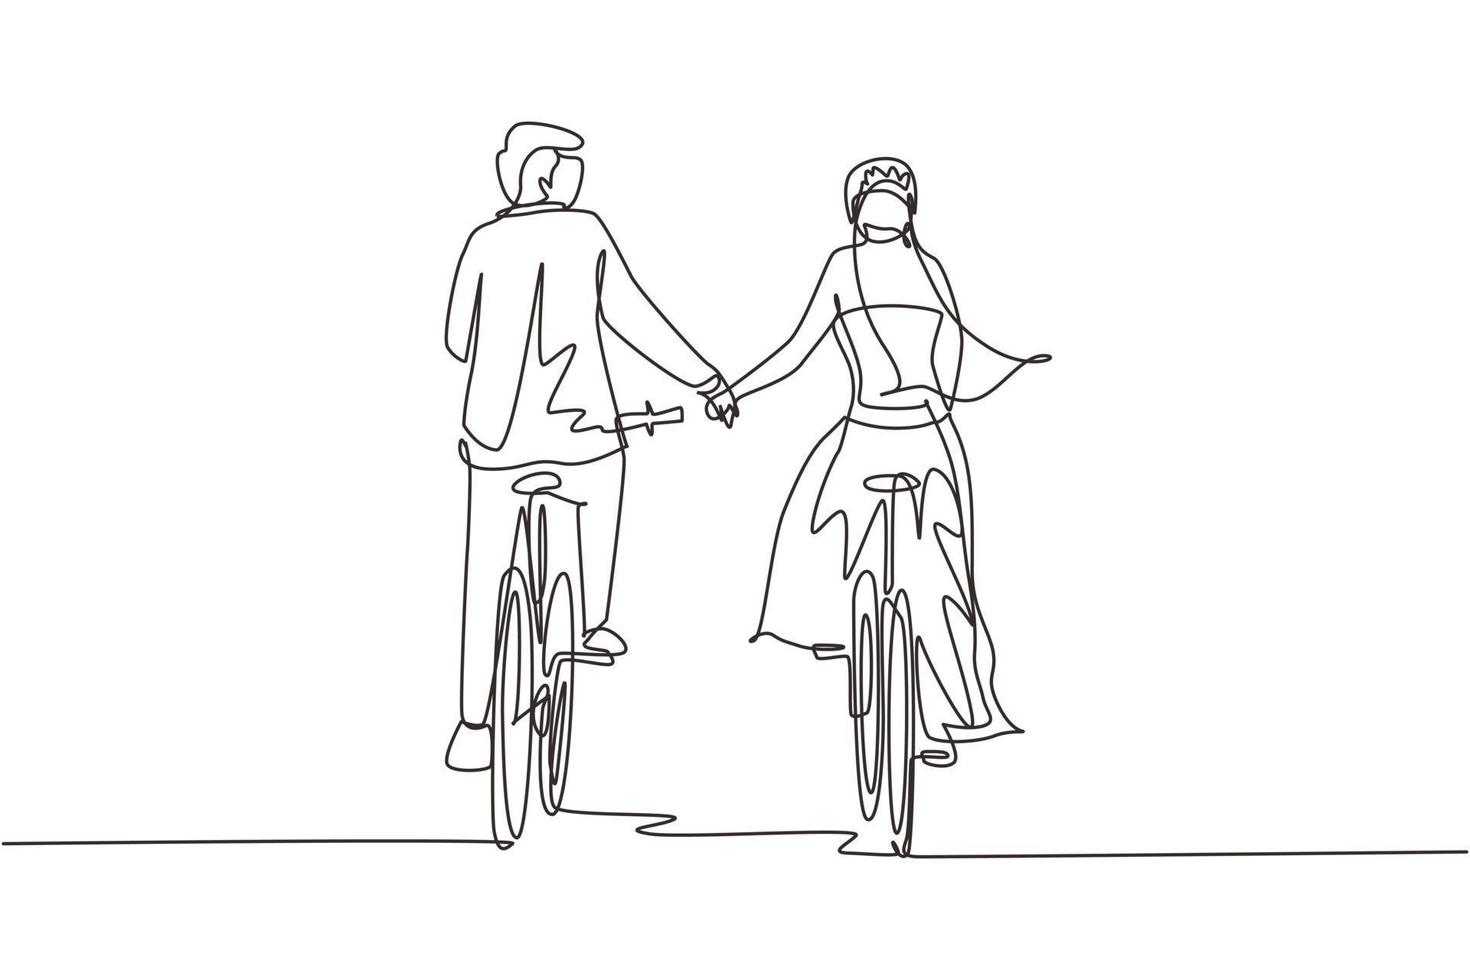 enkele doorlopende lijntekening gelukkig romantisch getrouwd stel fietsen terug naar de camera en hand in hand. jonge man en vrouw verliefd trouwjurk dragen. een lijn tekenen grafisch ontwerp vector